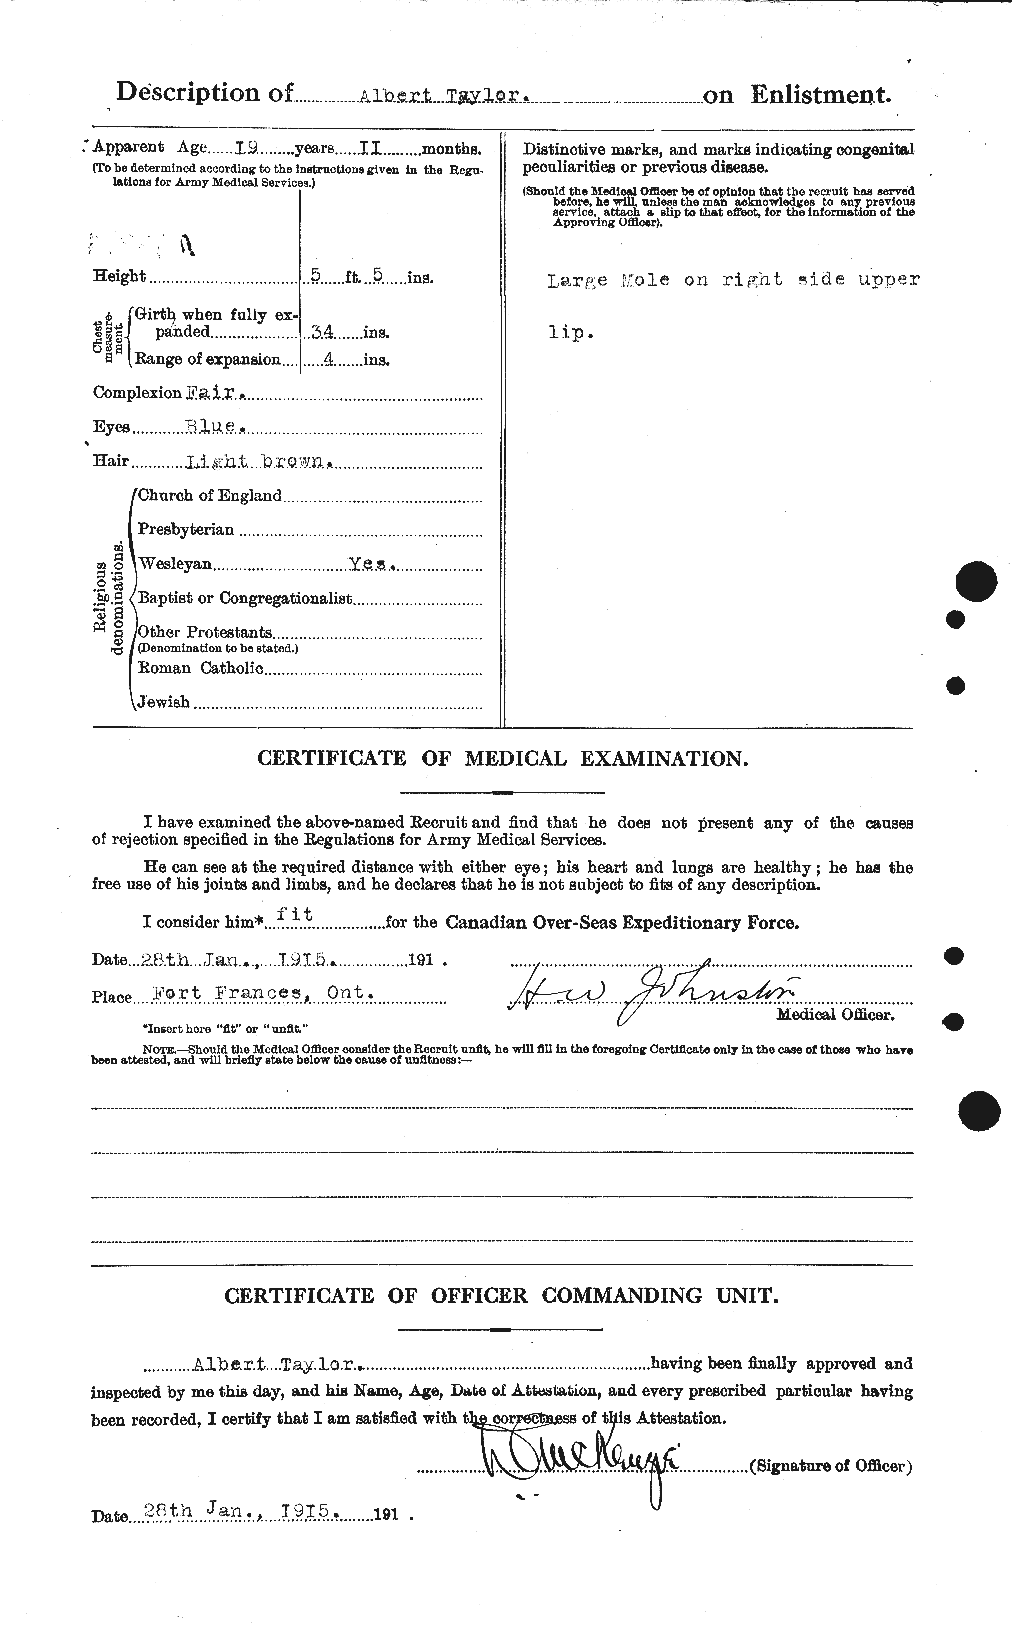 Dossiers du Personnel de la Première Guerre mondiale - CEC 626091b